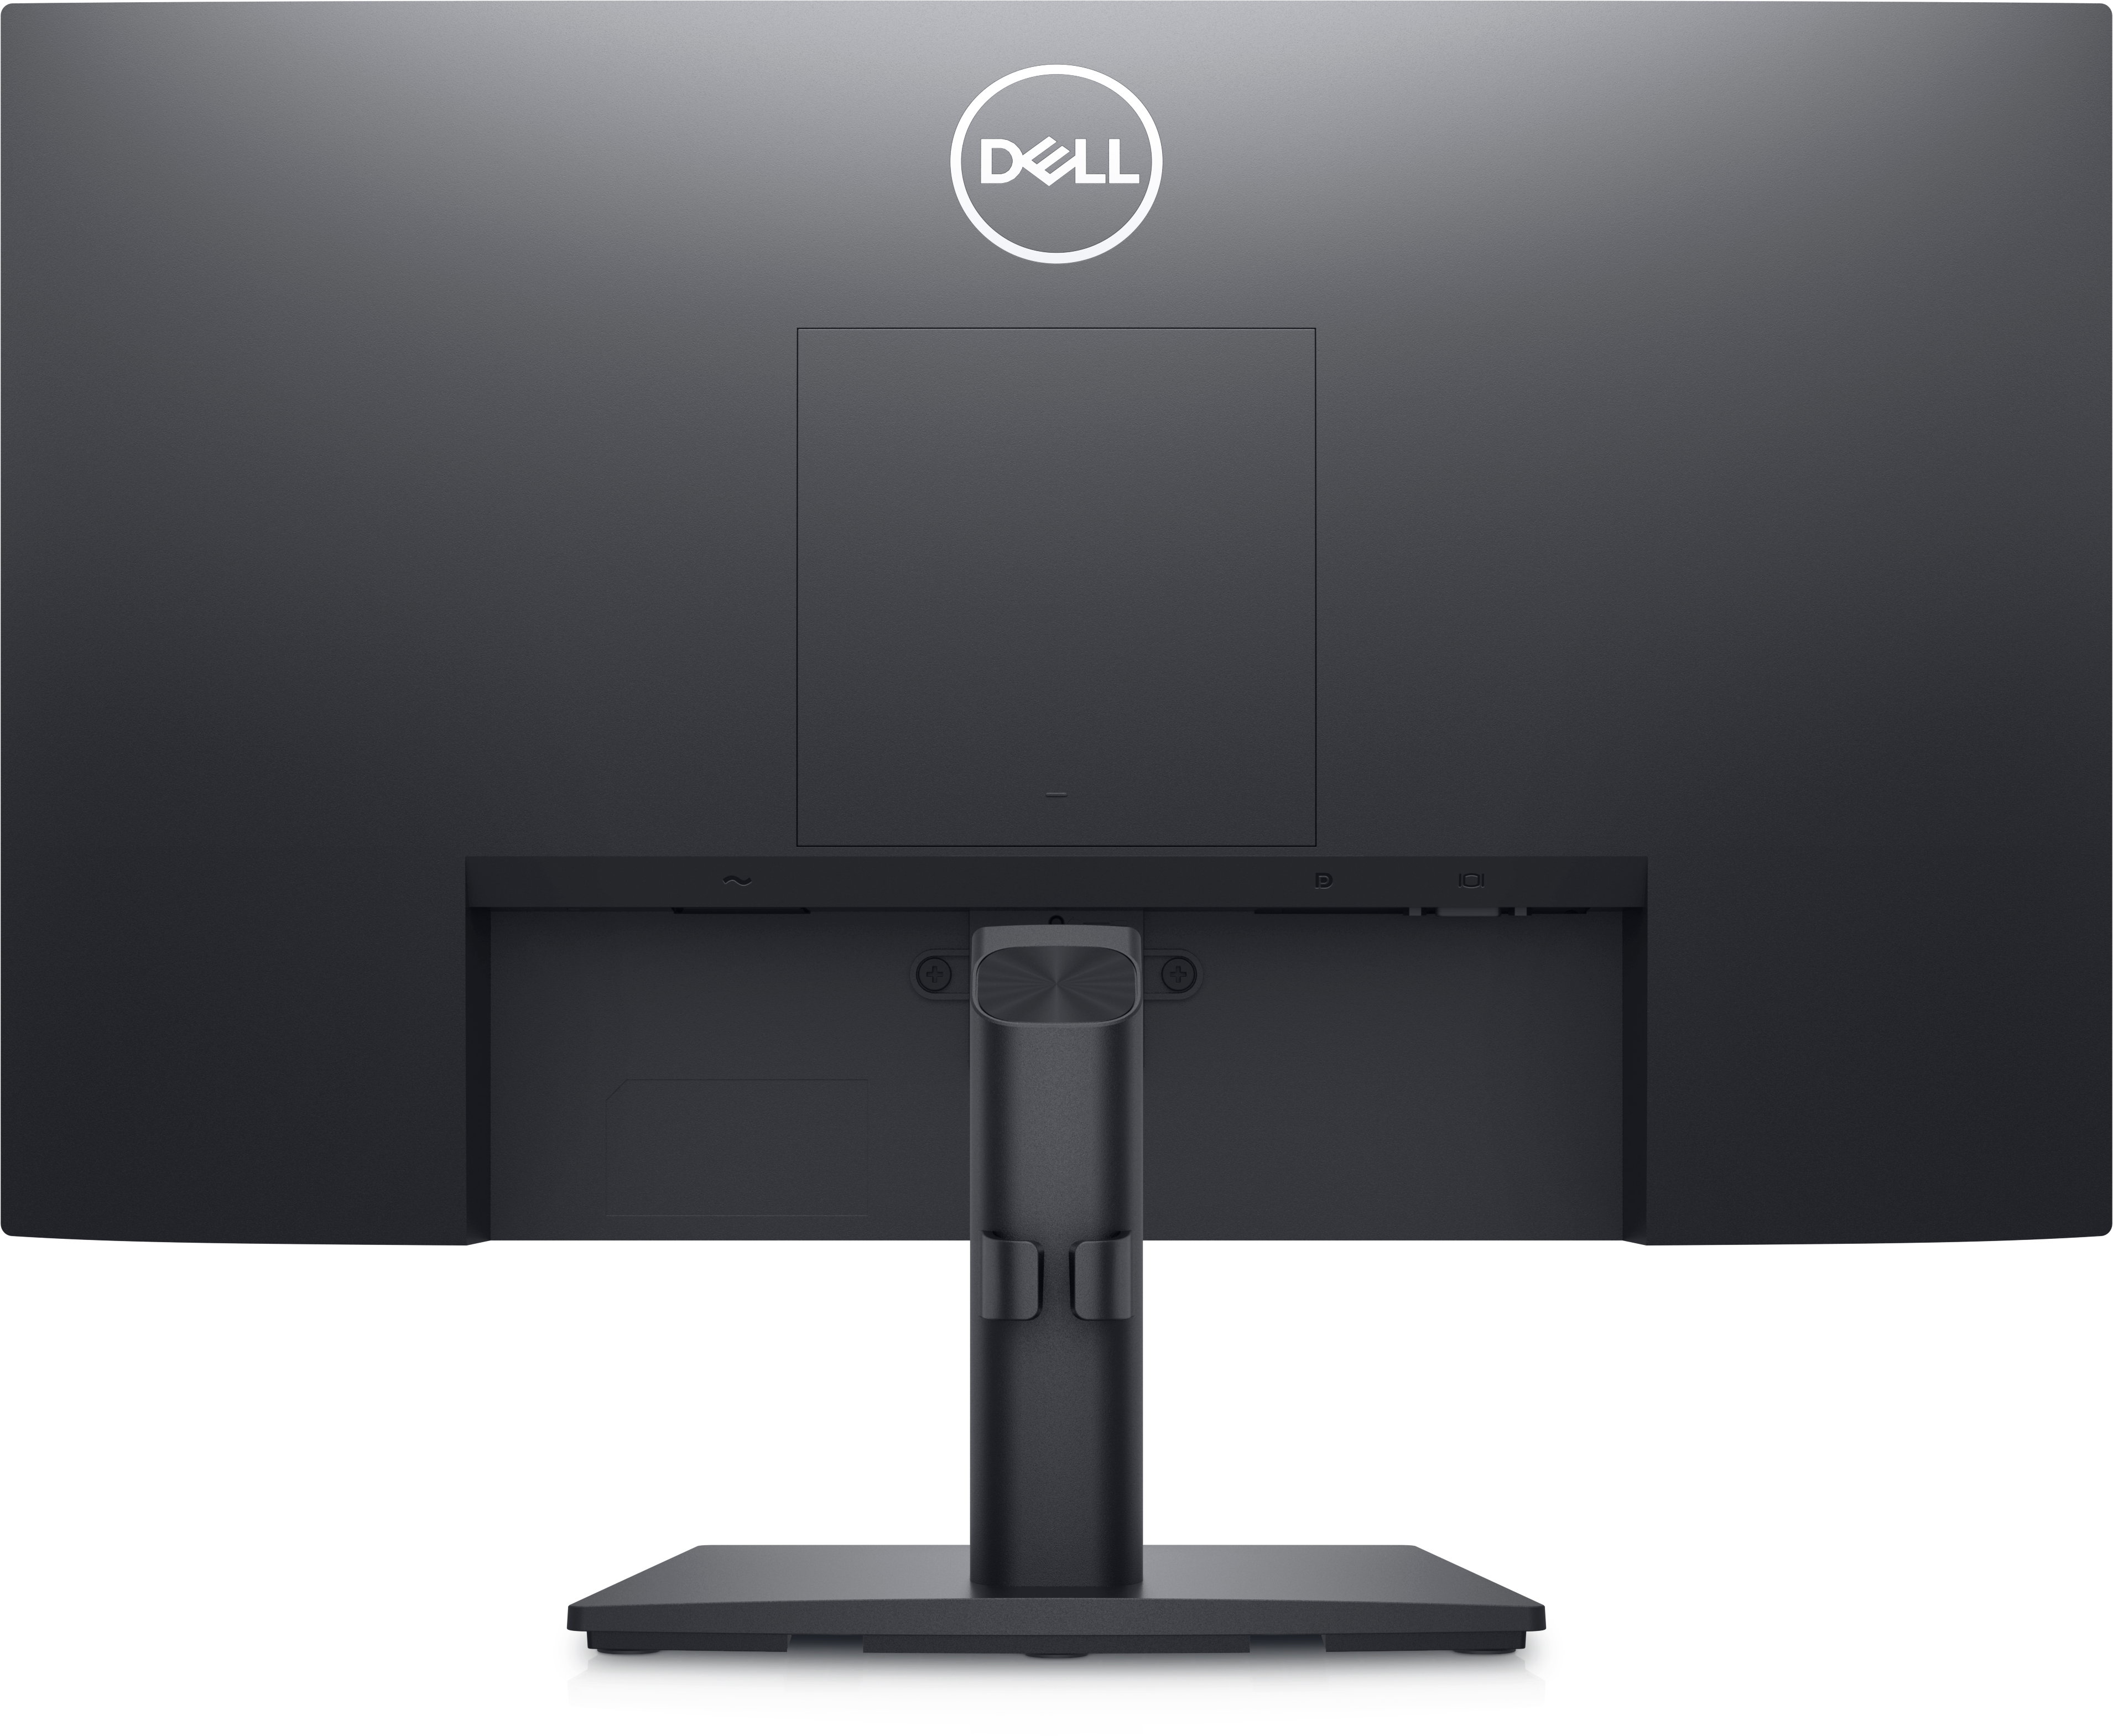 Dell 22 FHD Computer Monitor - E2222H | Dell USA